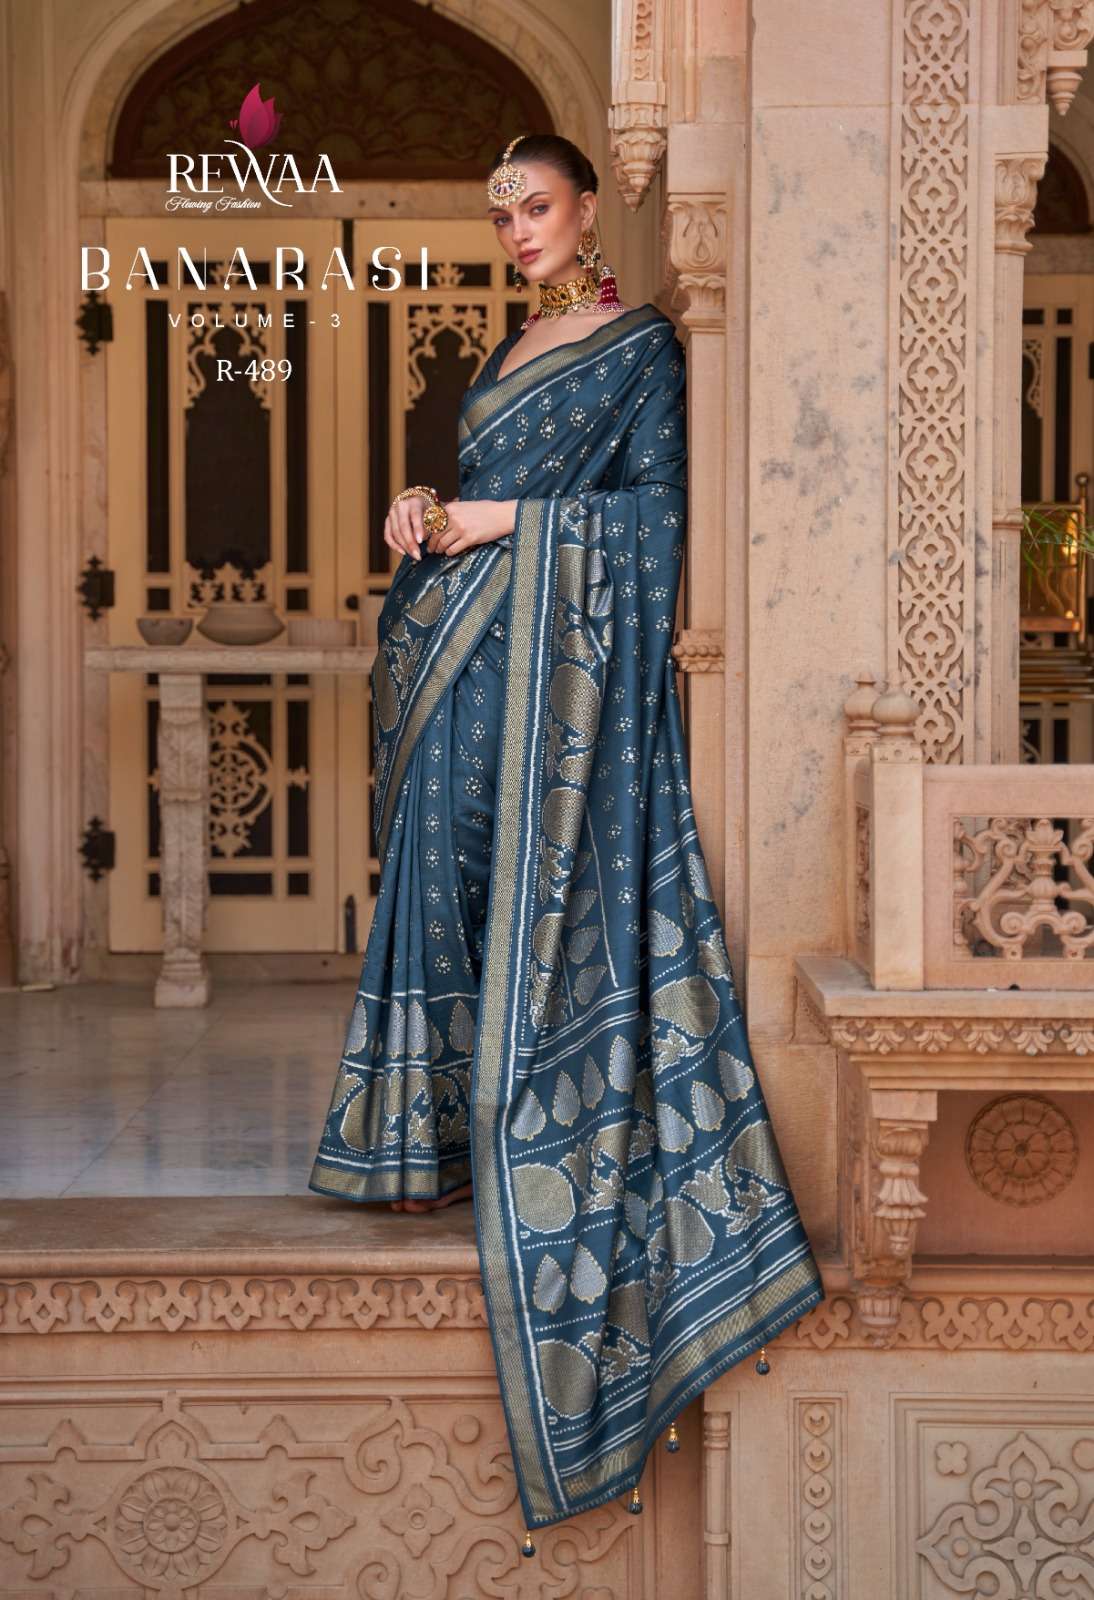 banarasi vol 3 by rewaa 487-489 designs colors banarasi silk sarees wholesaler 